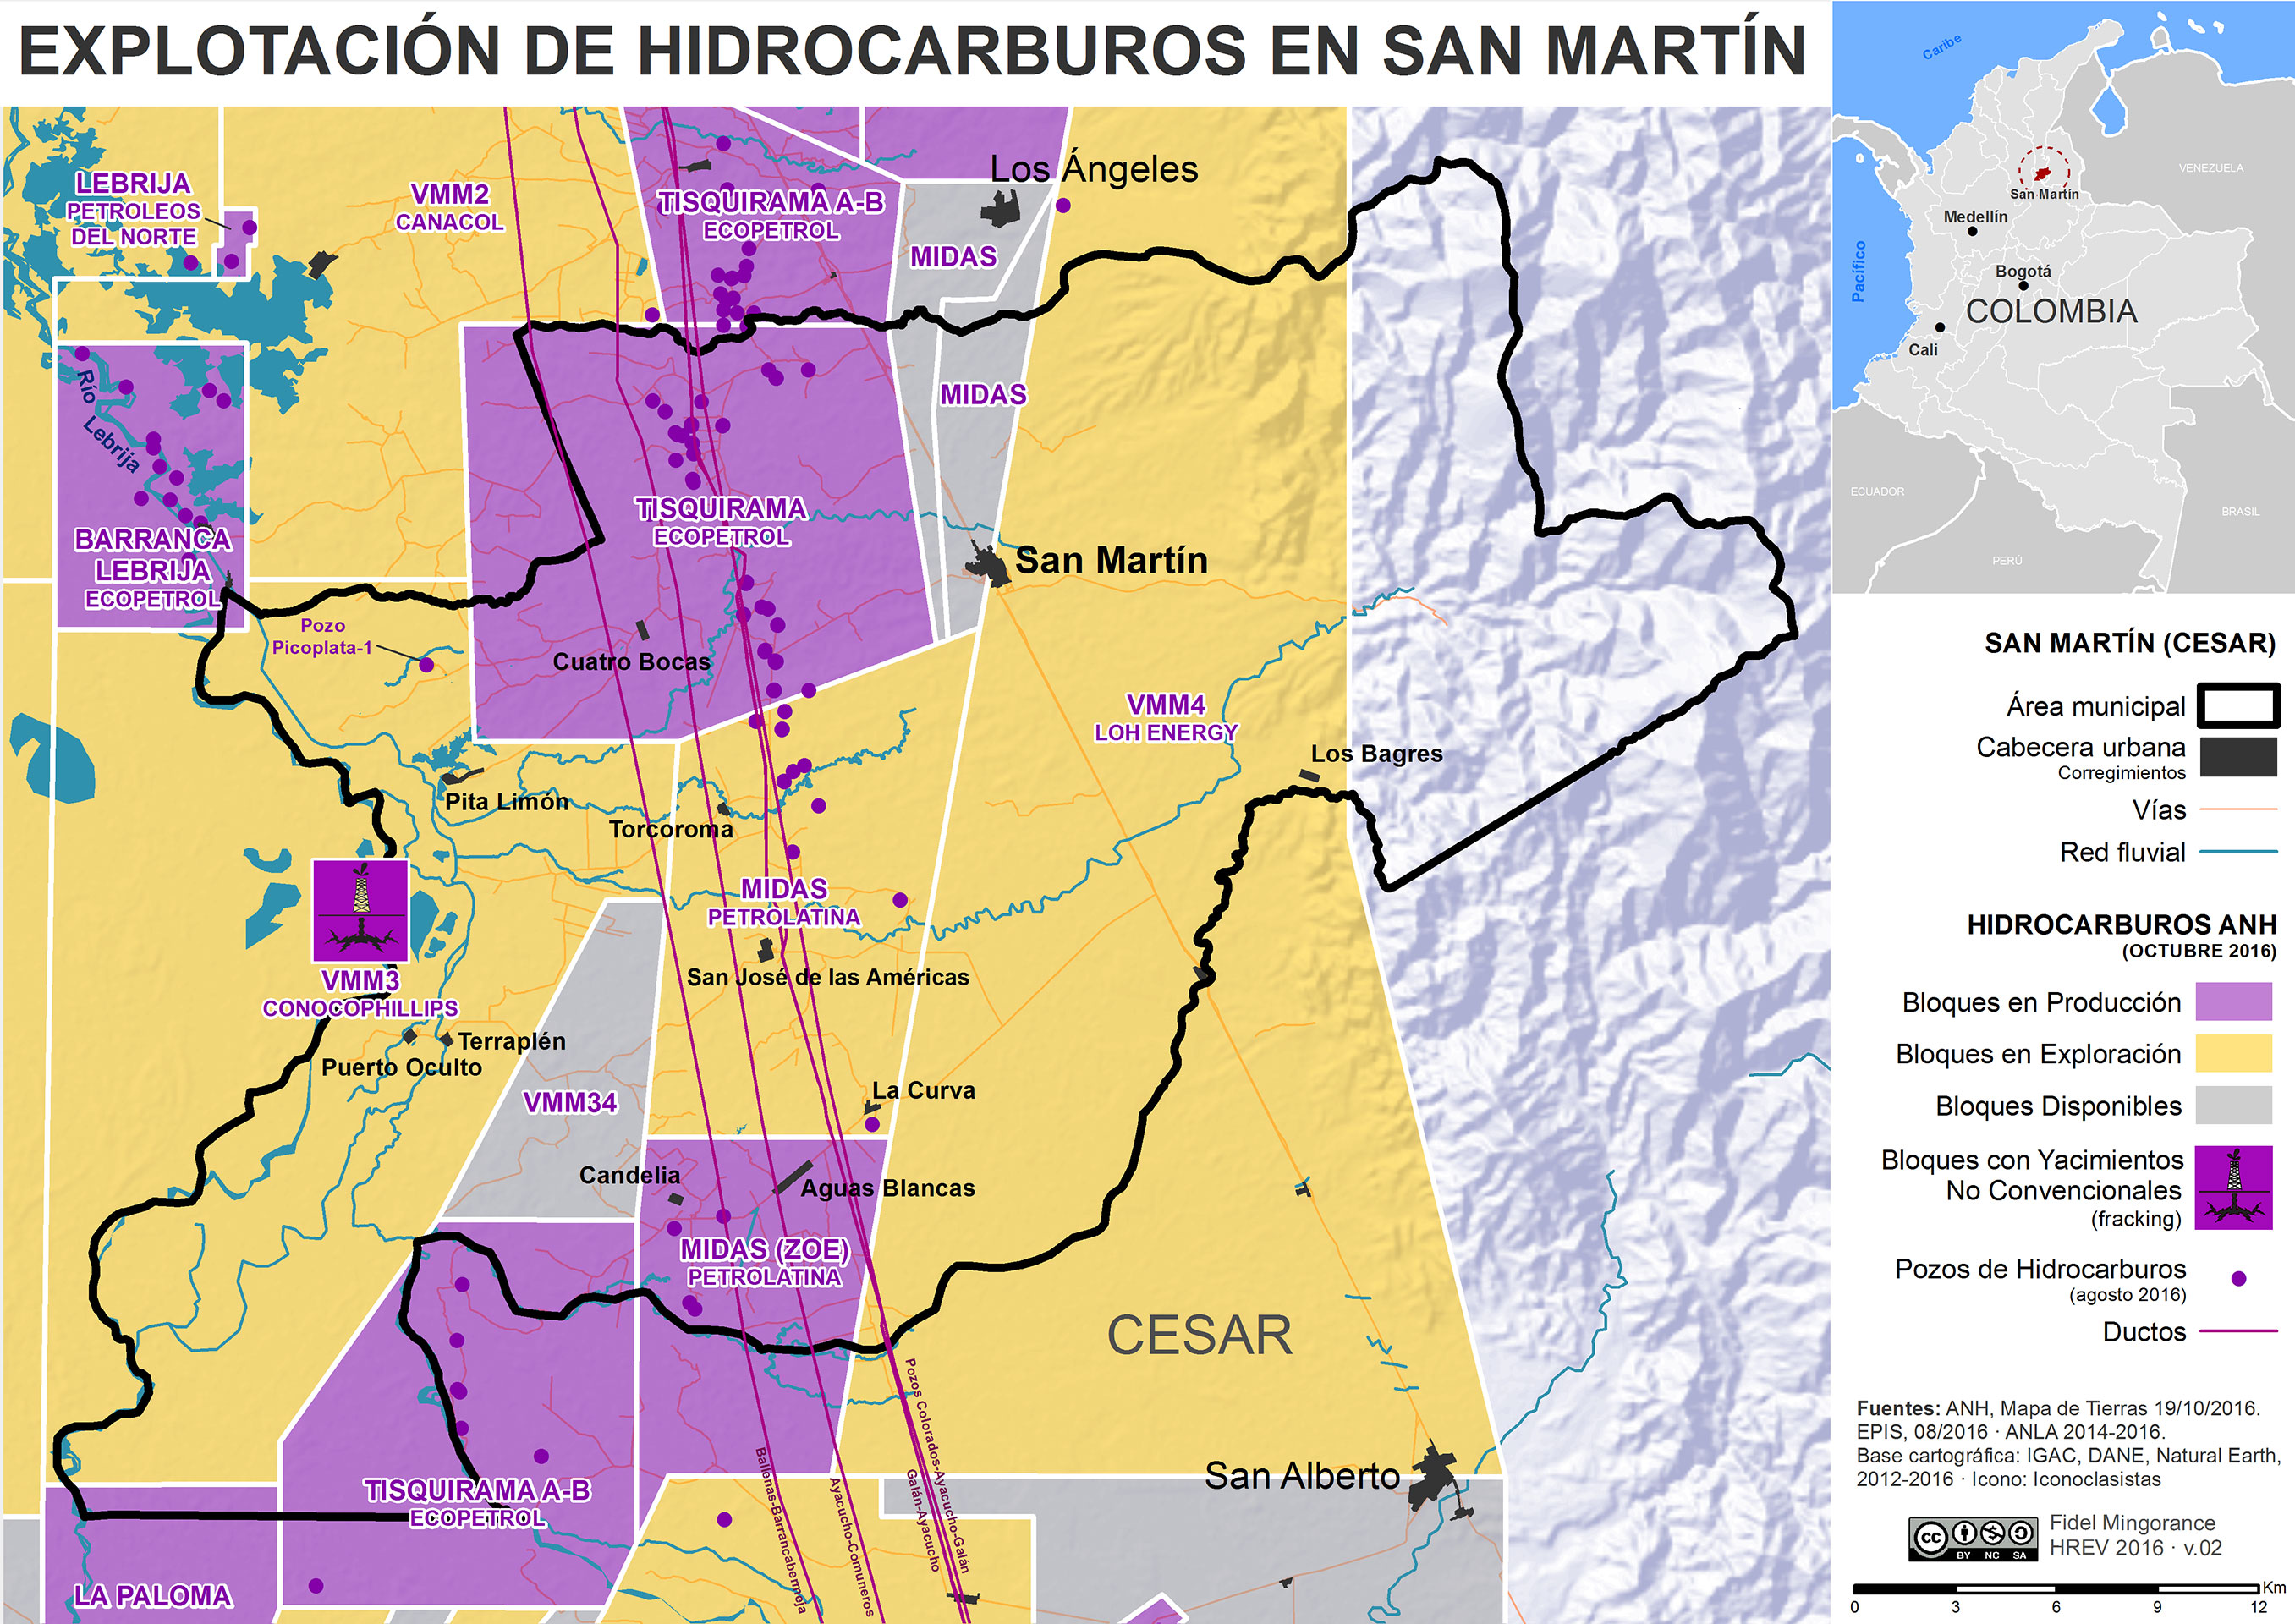 Explotacion de hidrocraguros en San Martin (2016)